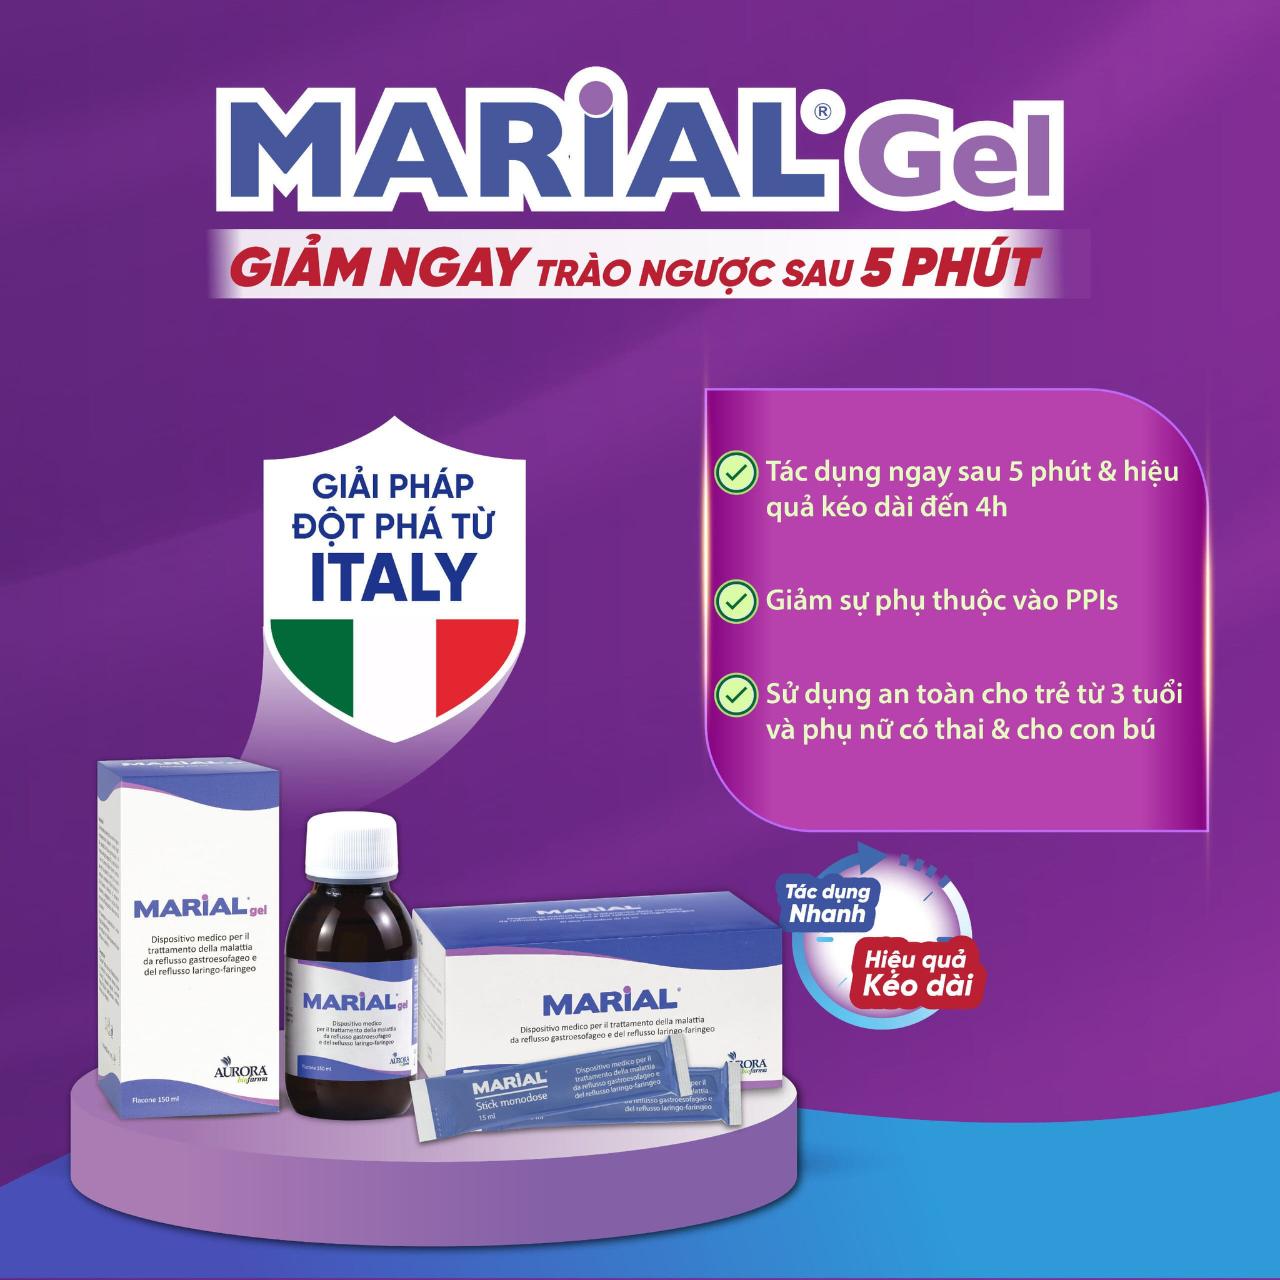 Marial Gel- Giải pháp giảm nhanh trào ngược sau 5 phút cho bệnh trào ngược dạ dày từ Italy